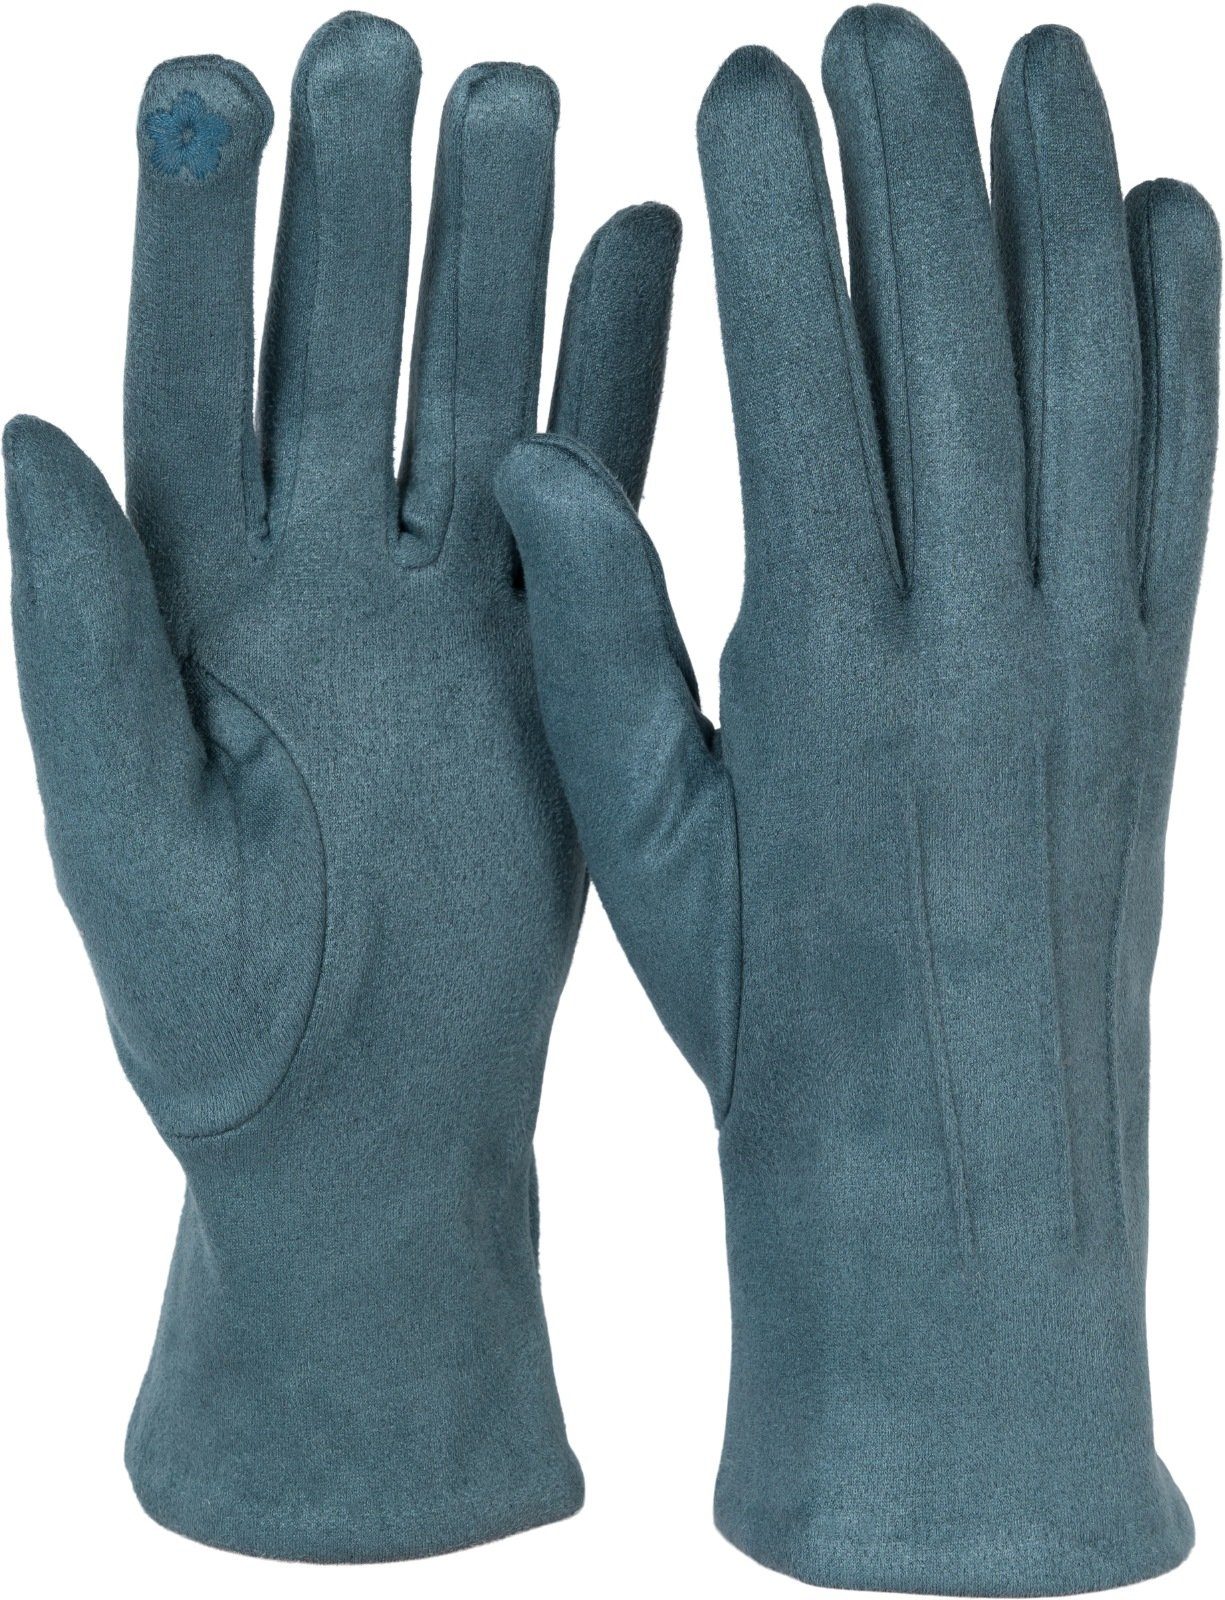 Handschuhe Ziernähte styleBREAKER Grau-Blau Touchscreen Fleecehandschuhe Einfarbige